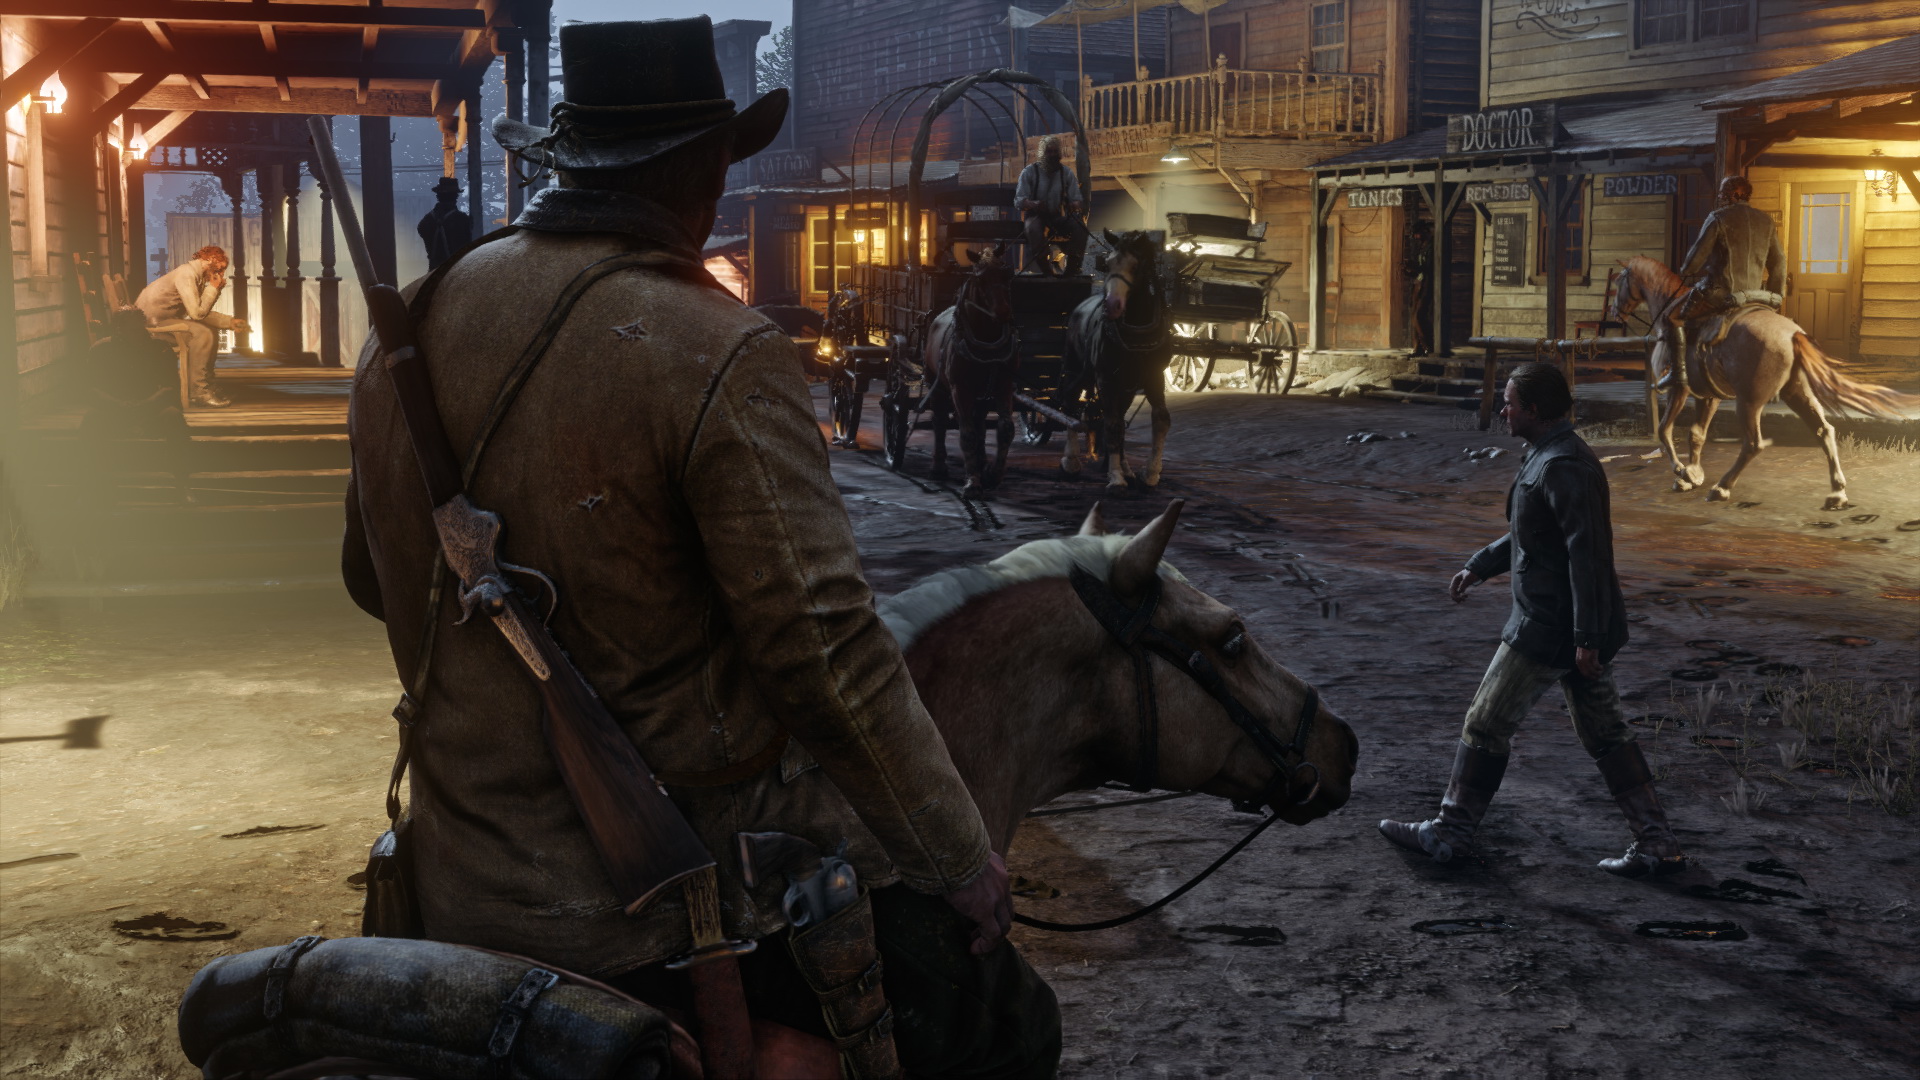 Red Dead Redemption 2, spuntano nuove indiscrezioni su personaggi e gameplay